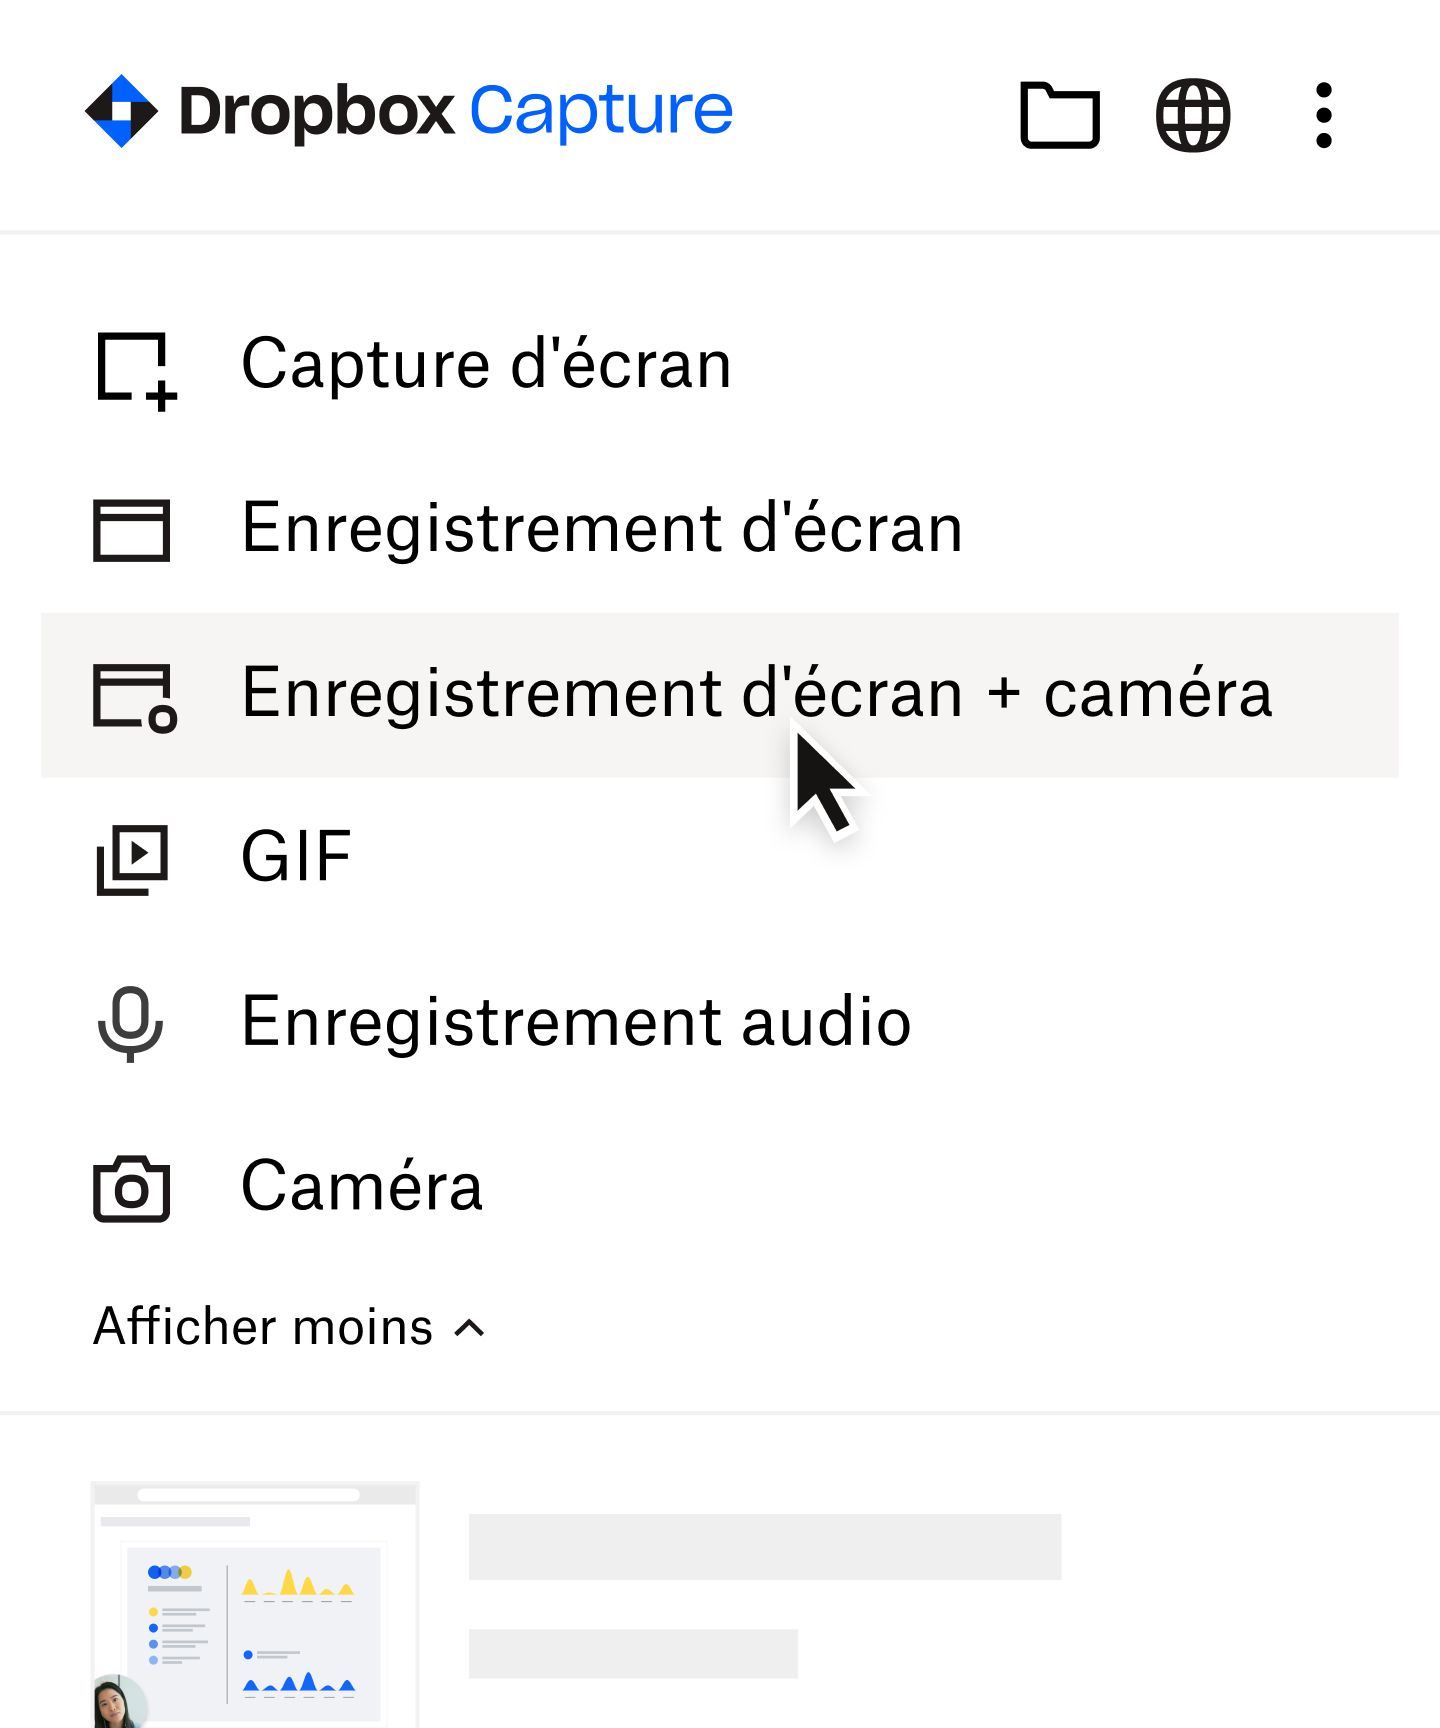 Utilisateur sélectionnant “Enregistrement d'écran + caméra” dans le menu Dropbox Capture